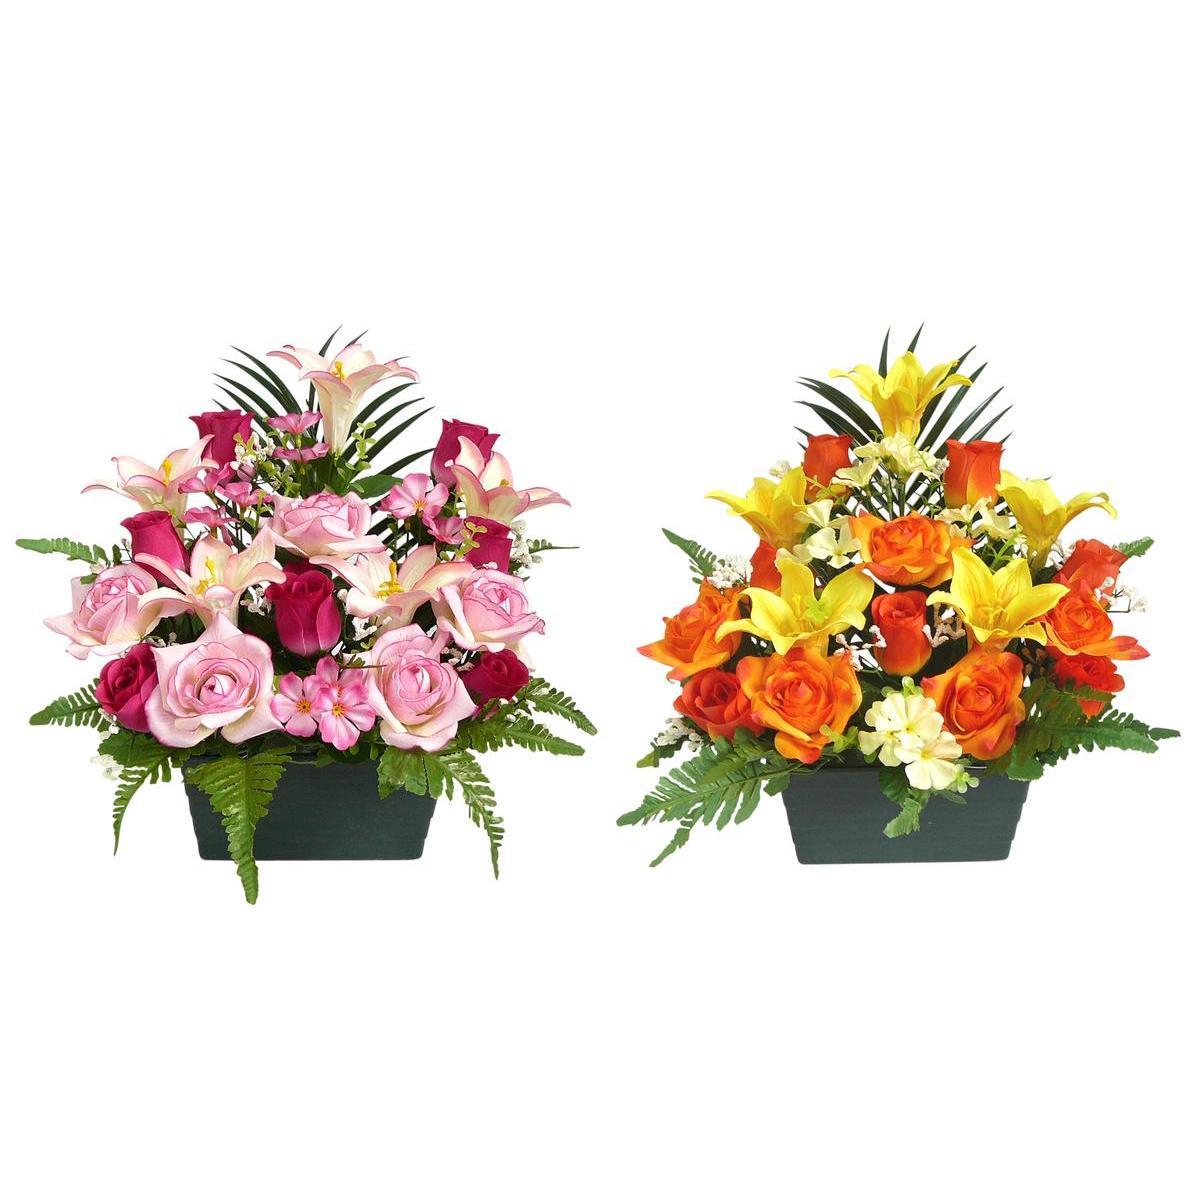 Jardinière de roses et lys - Plastique - 21 x H 40 cm - Différents coloris